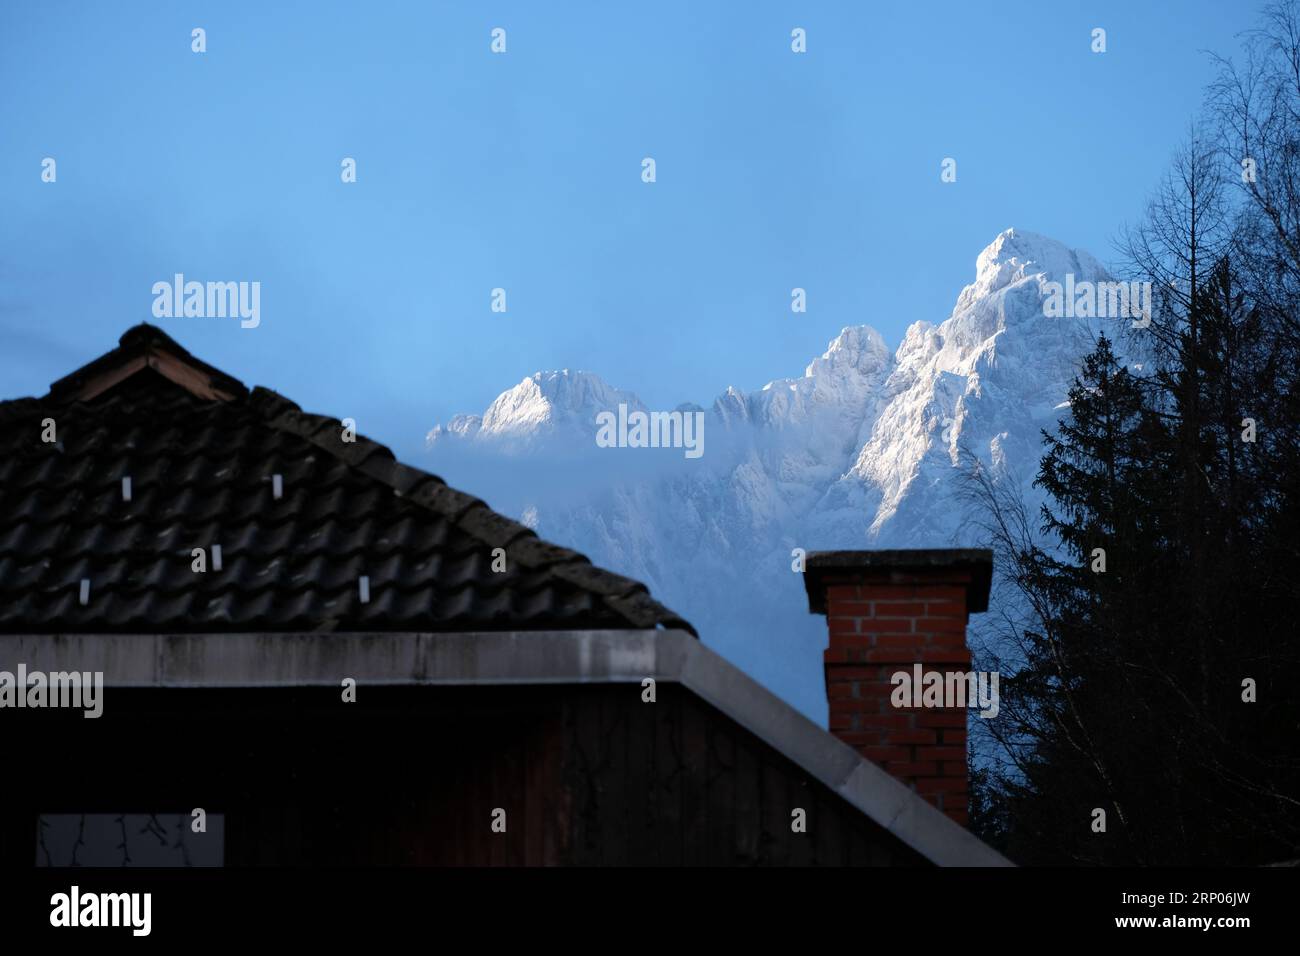 Les sommets enneigés des Alpes juliennes s'élèvent au-dessus d'un toit à Kransjka Gora, en Slovénie. Banque D'Images